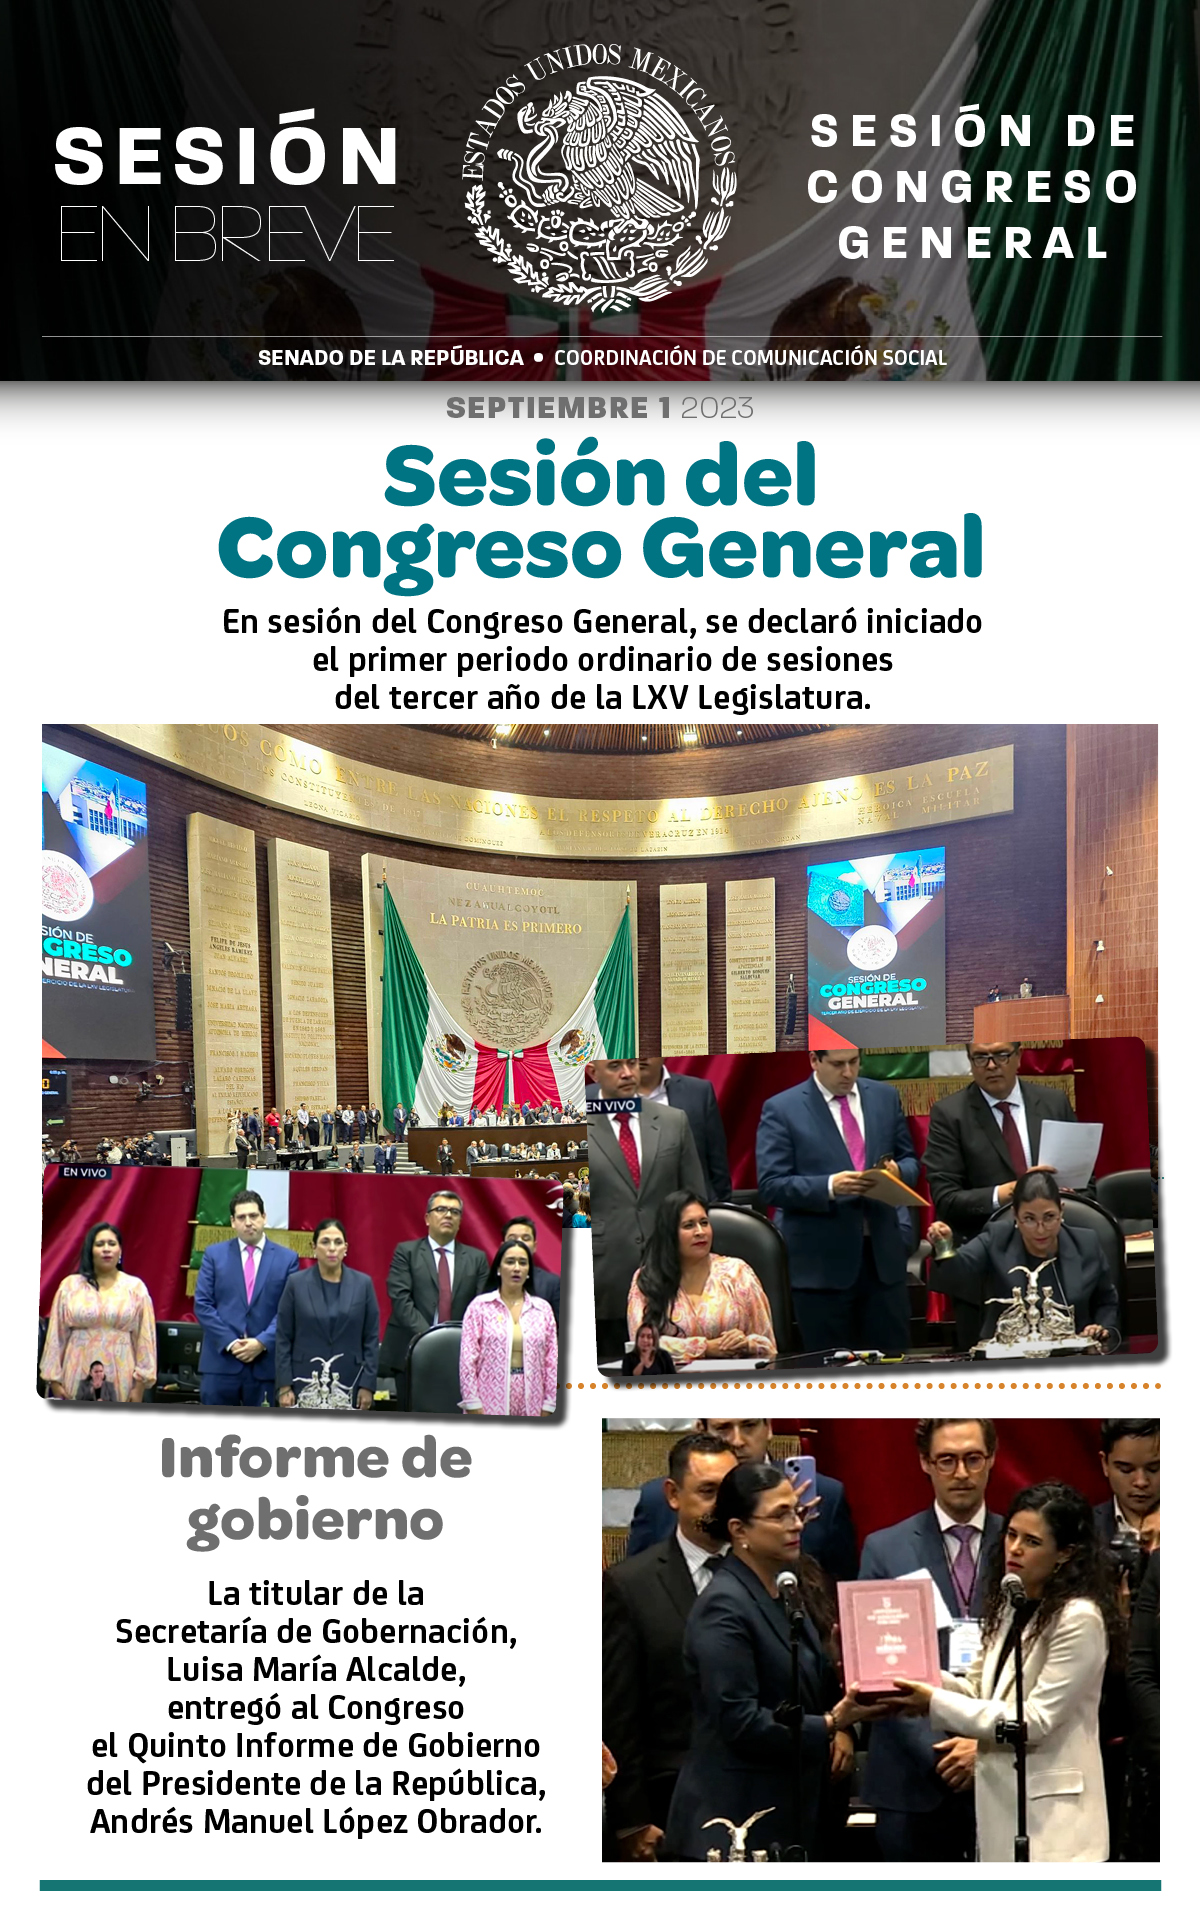 Sesión en breve de la sesión de Congreso General del 1 de septiembre de 2023